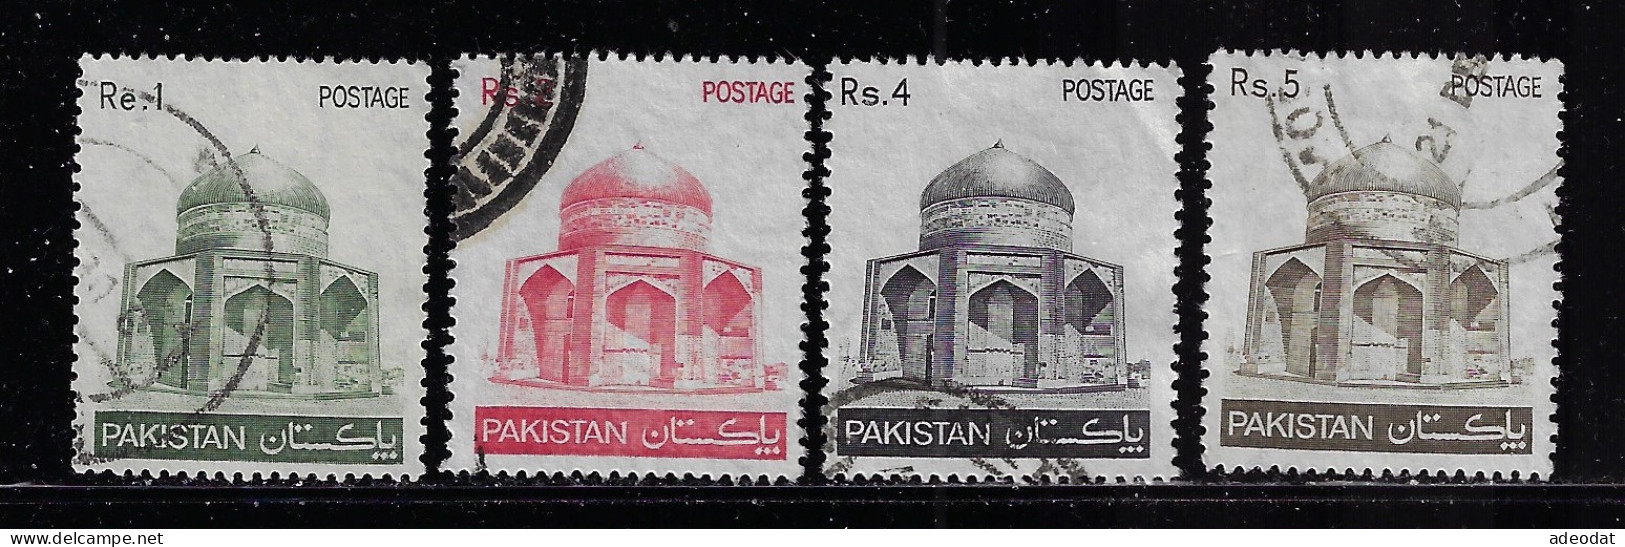 PAKISTAN  1978  SCOTT #470,472,474,475   USED  $0.80 - Pakistan